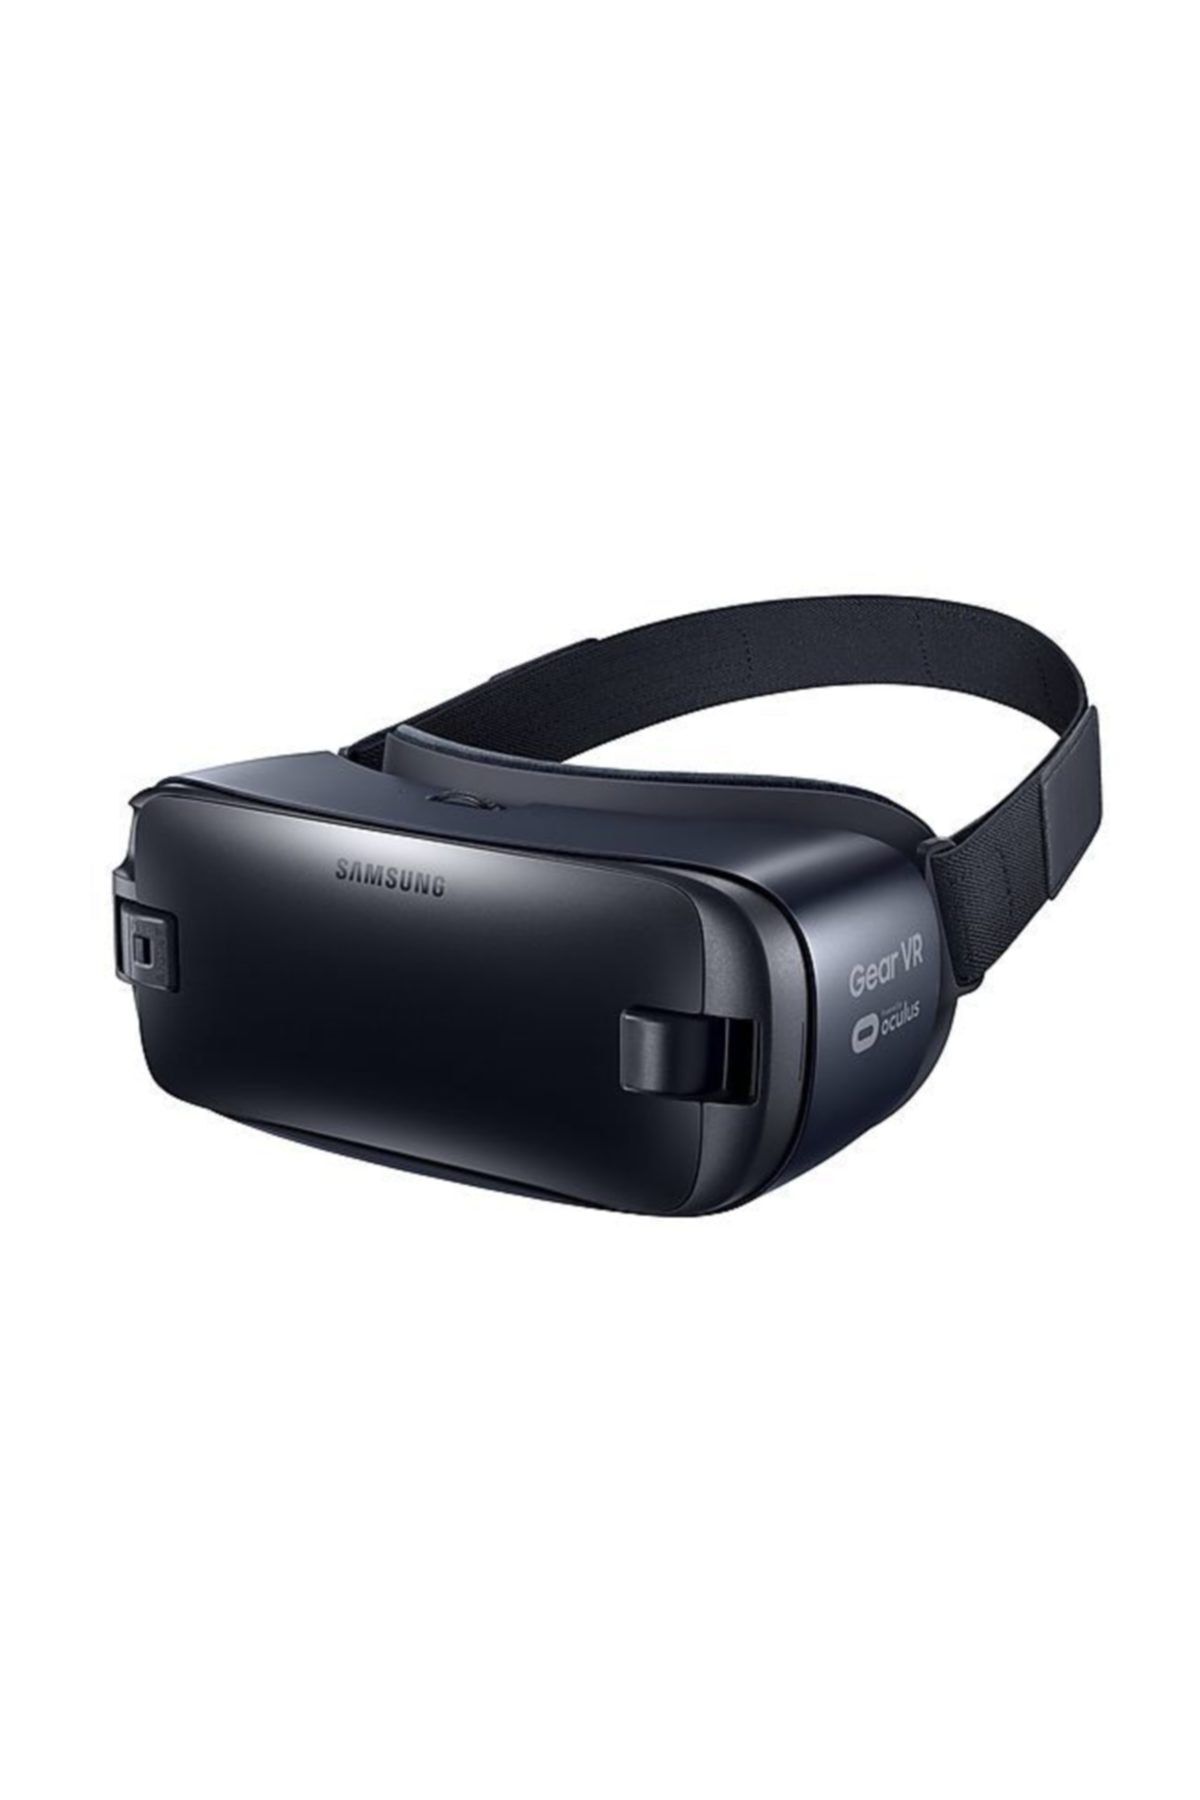 Samsung Gear VR (2016) Sanal Gerçeklik Gözlüğü - SM-R323